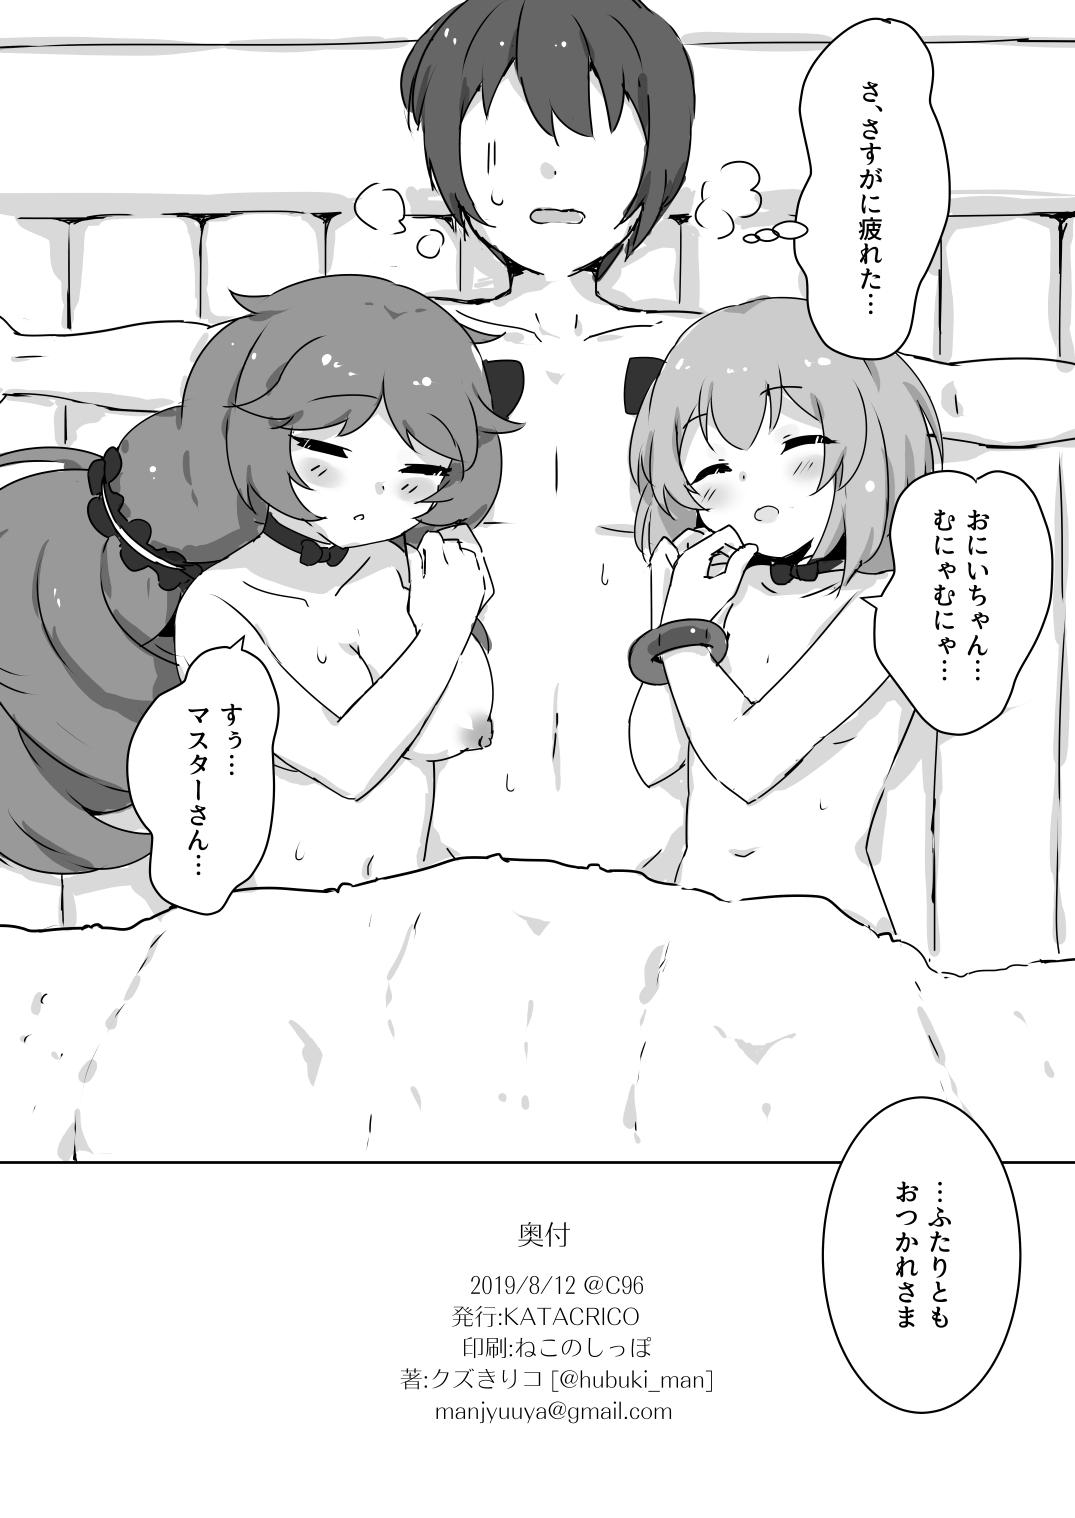 Fuwa Fuwa Bath Time 21